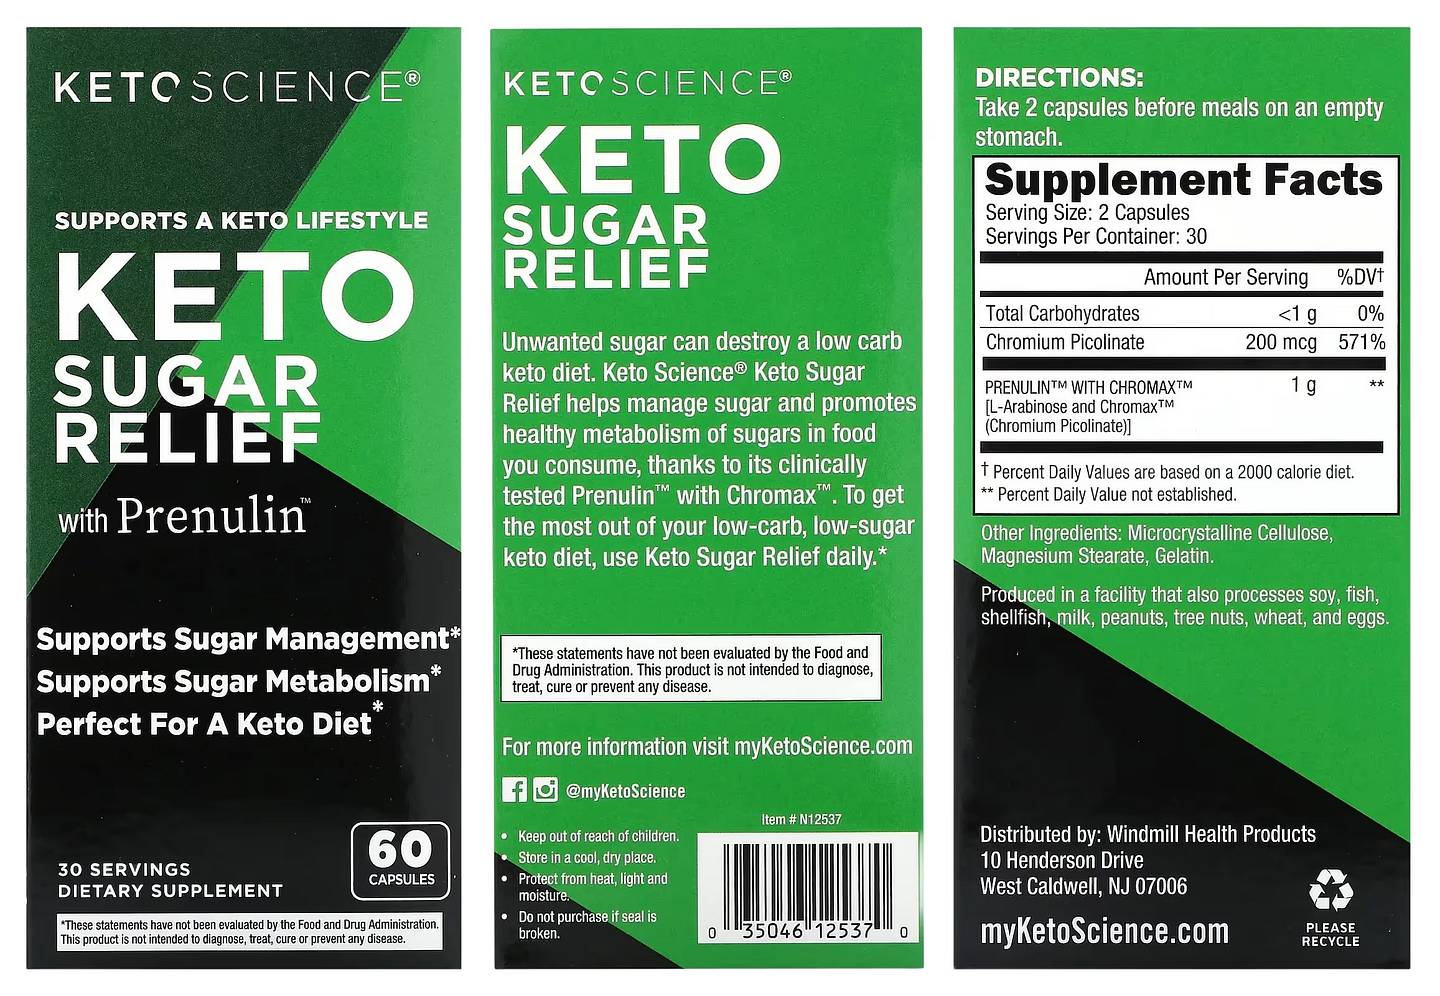 Keto Science, Keto Sugar Relief with Prenulin packaging